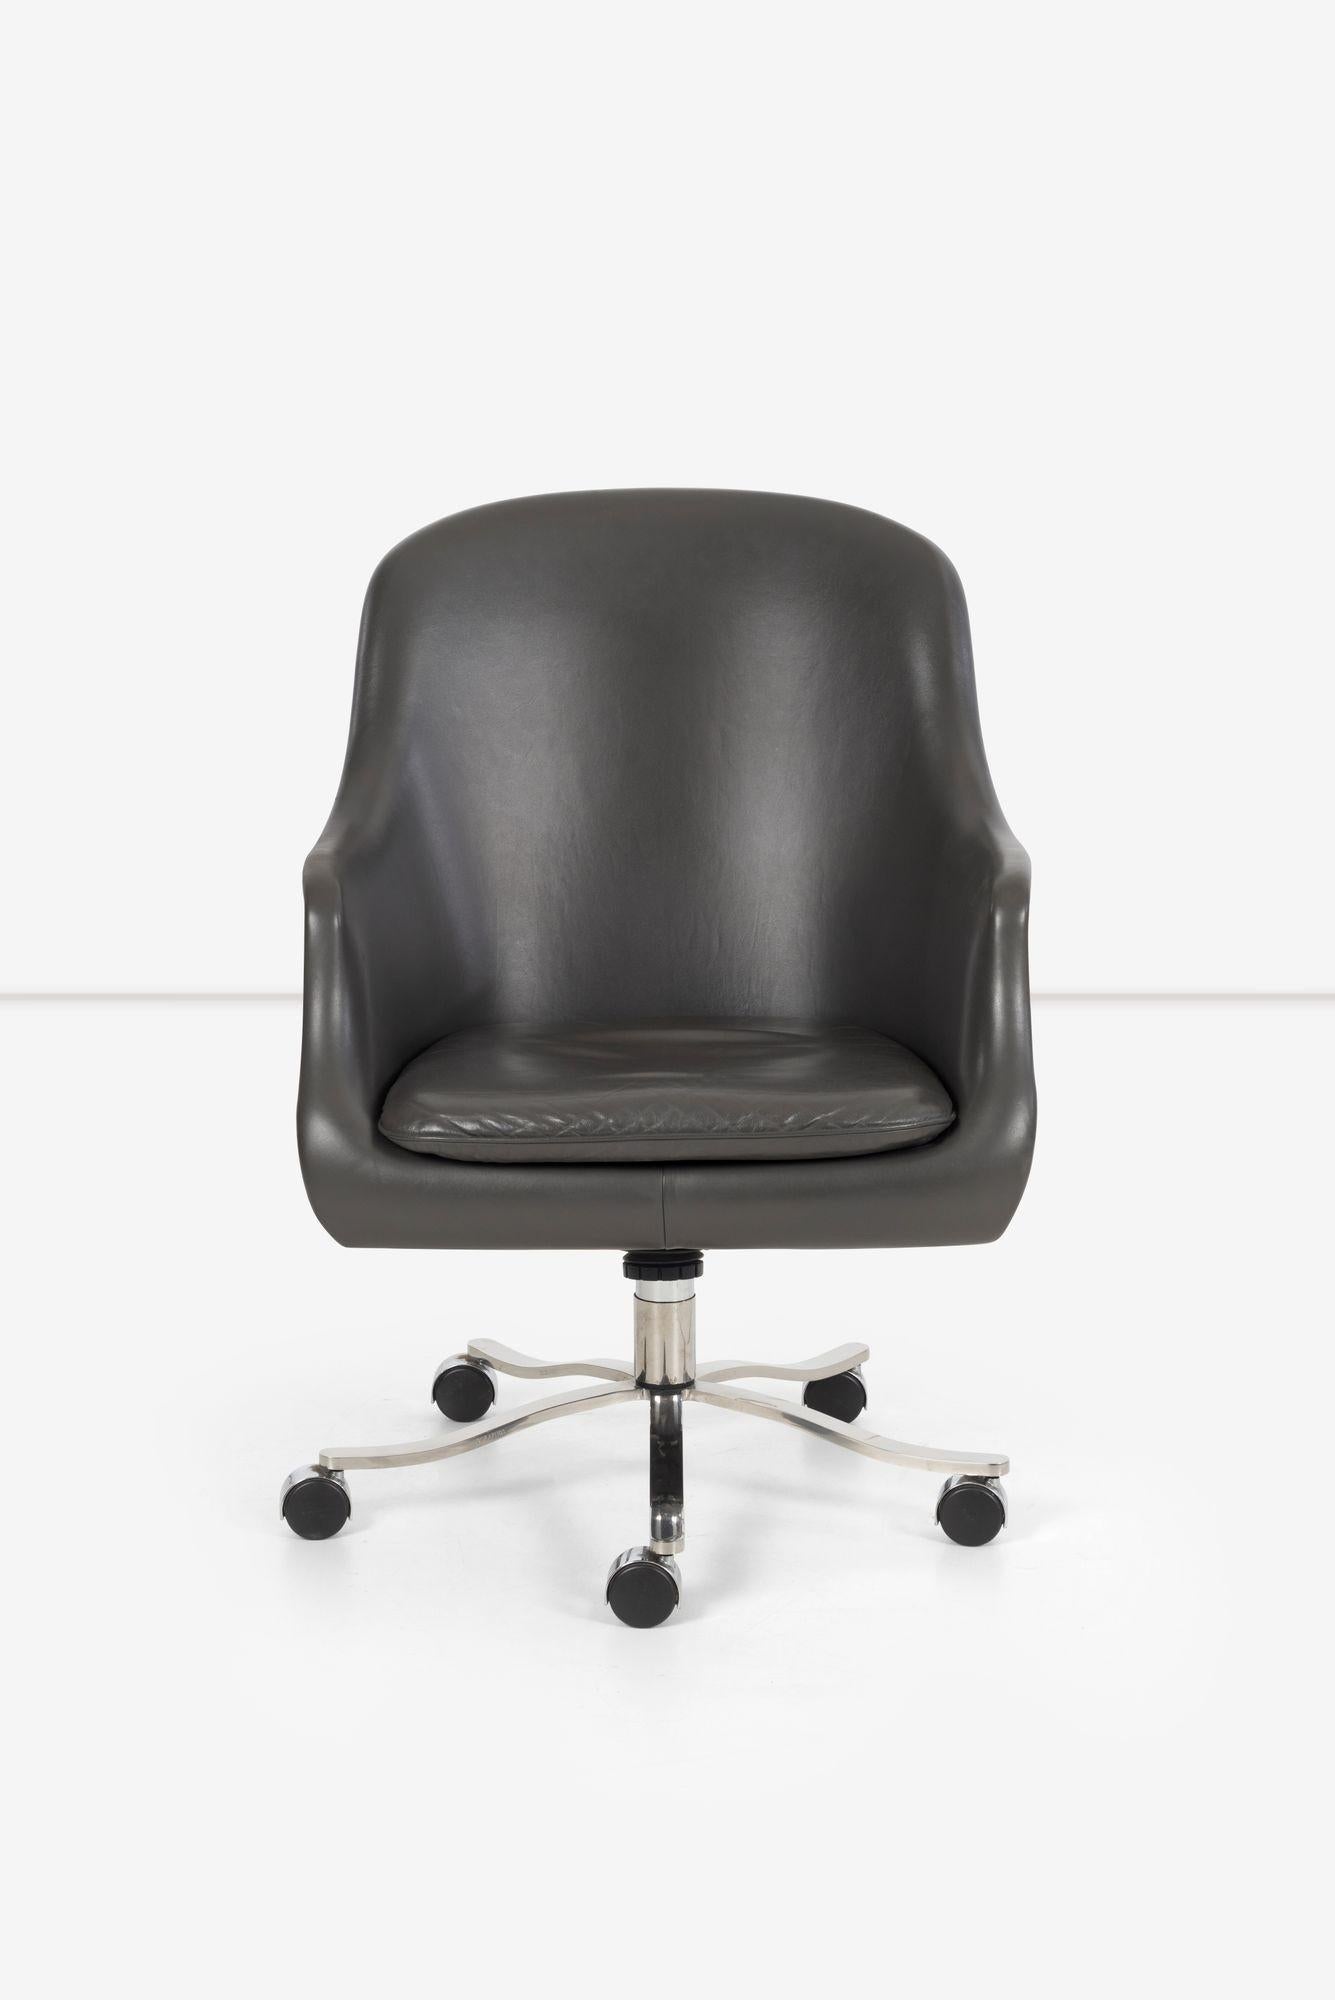 Nicos Zographos Bucket Desk Chair 1964, Original leicht gebraucht Cool-Grey Leder mit verchromtem 5-Sternfuß auf Rollen.
Sitzhöhe einstellbar: 19.5 mit 2